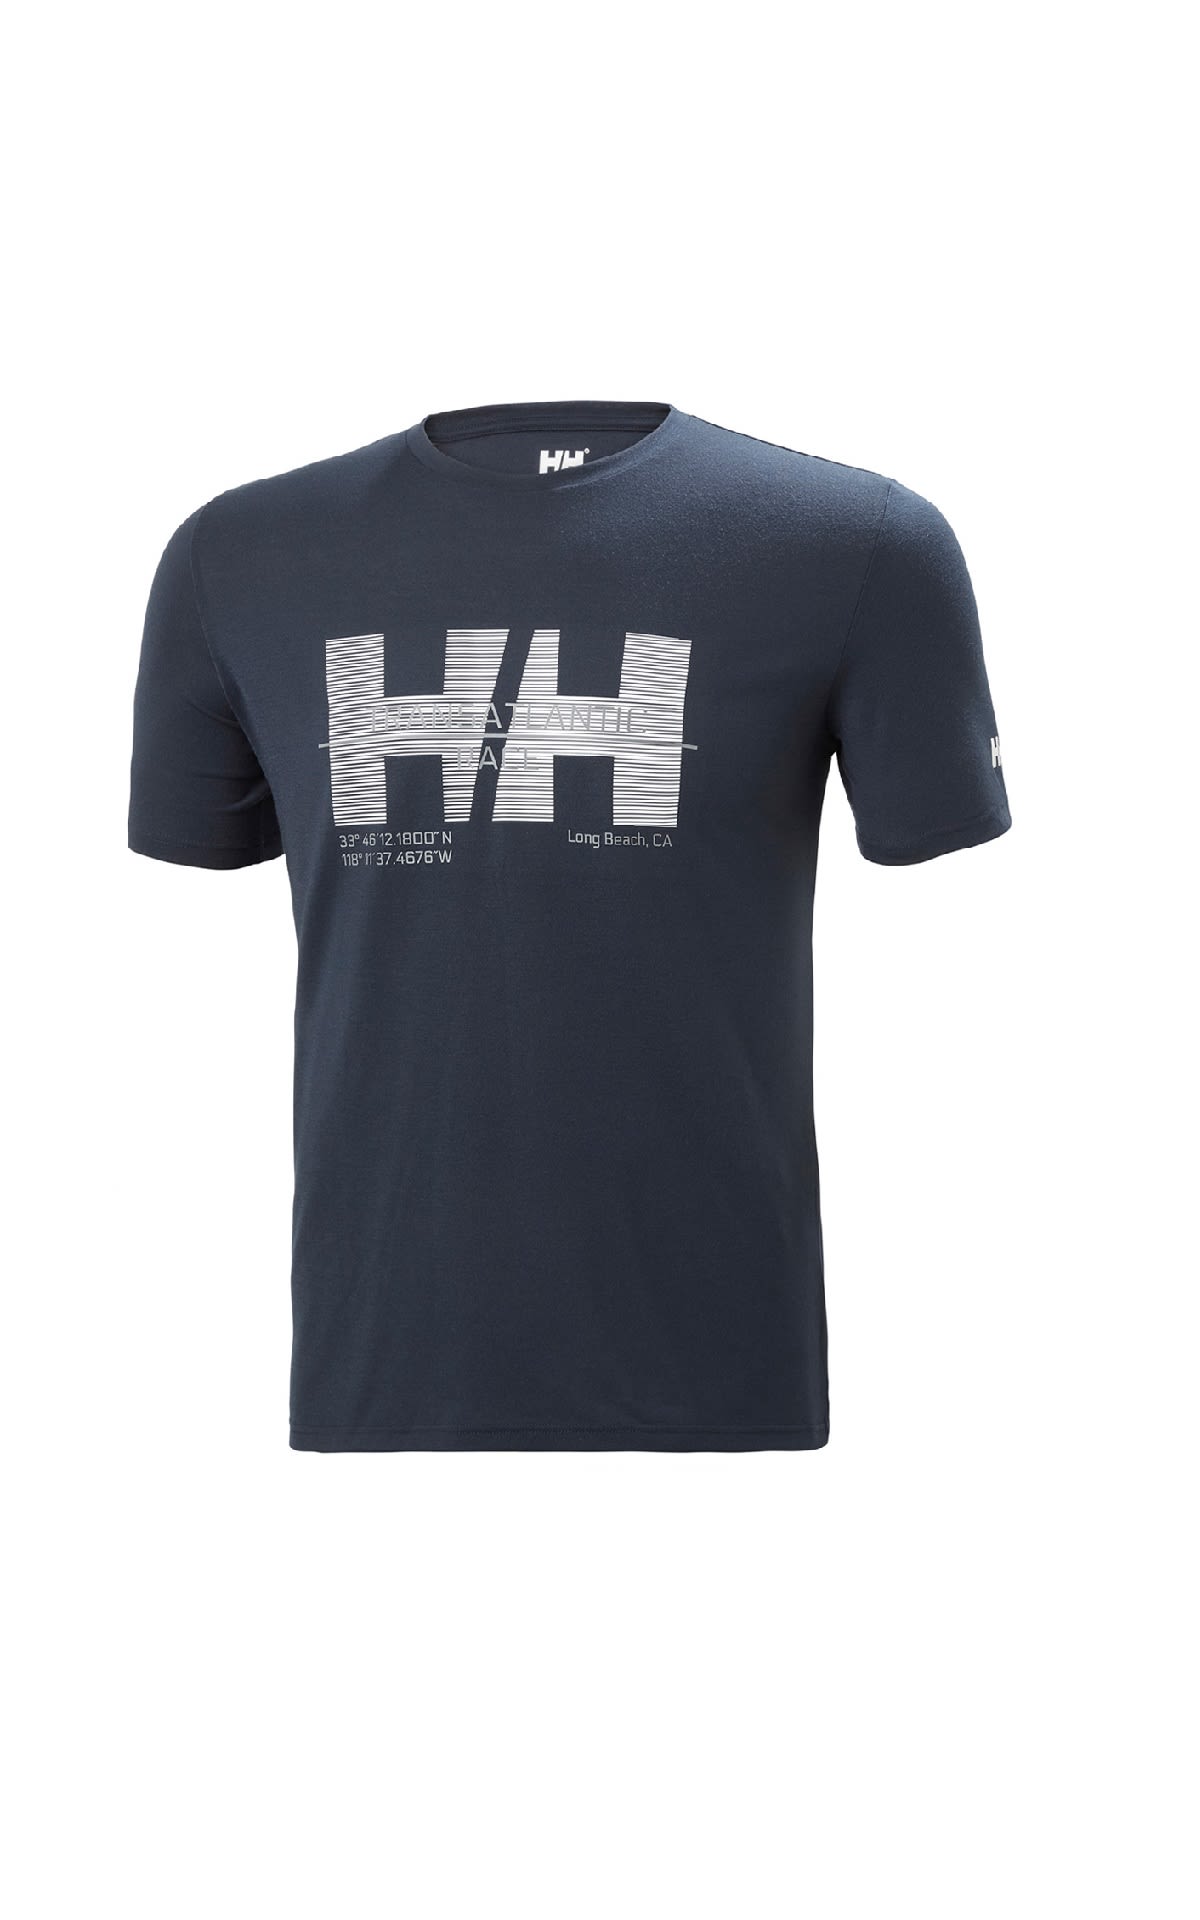 Camiseta azul marino con logo para hombre deHelly Hanasen